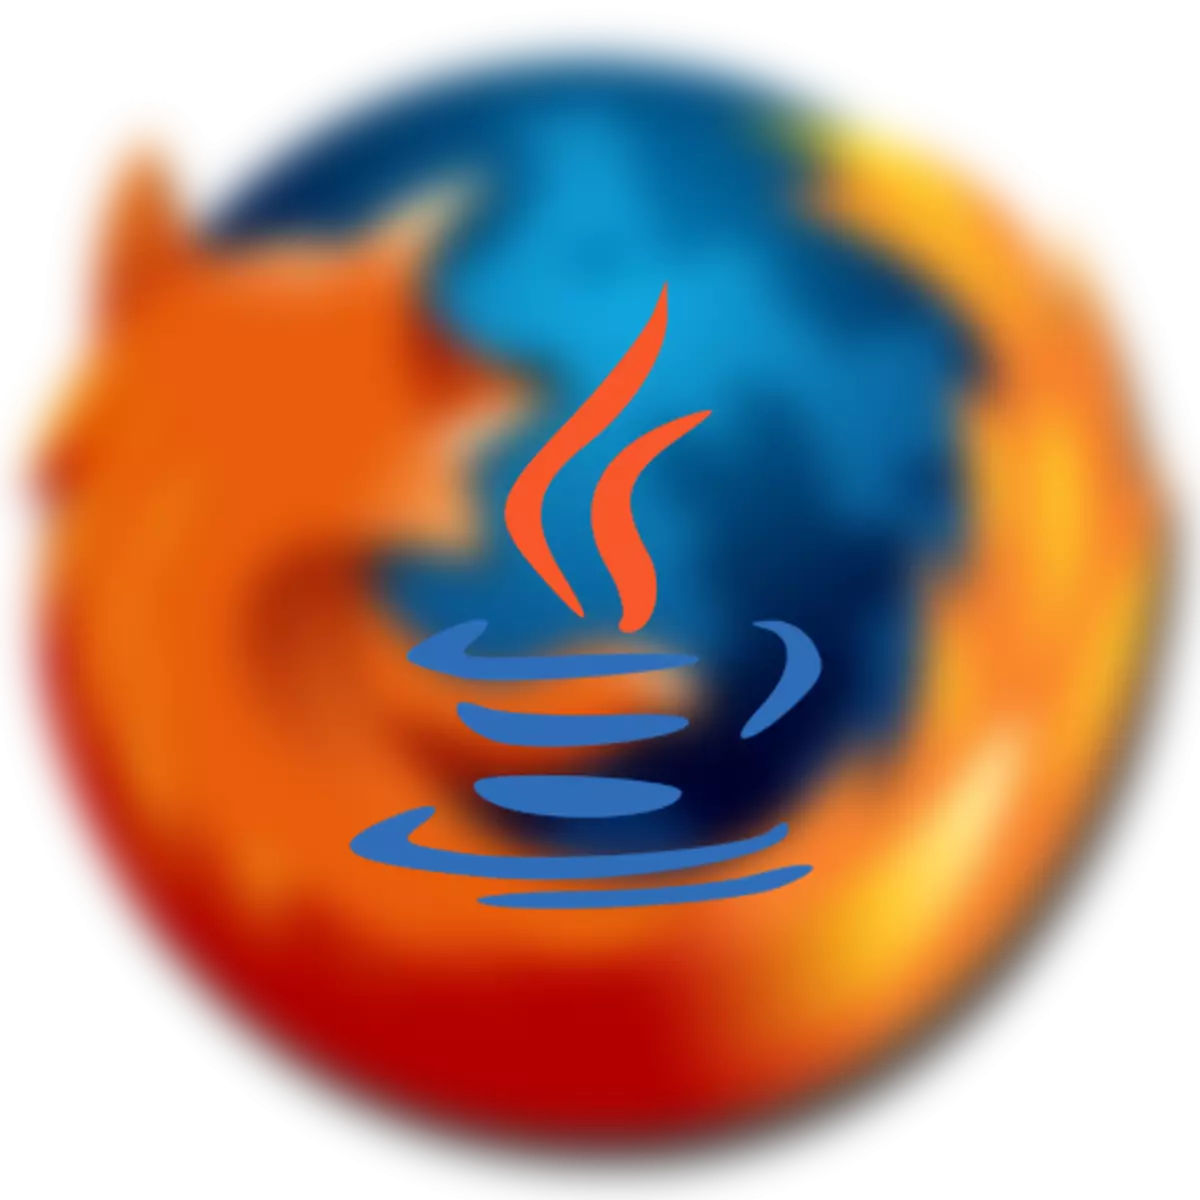 Kif tippermetti Java fil-Firefox